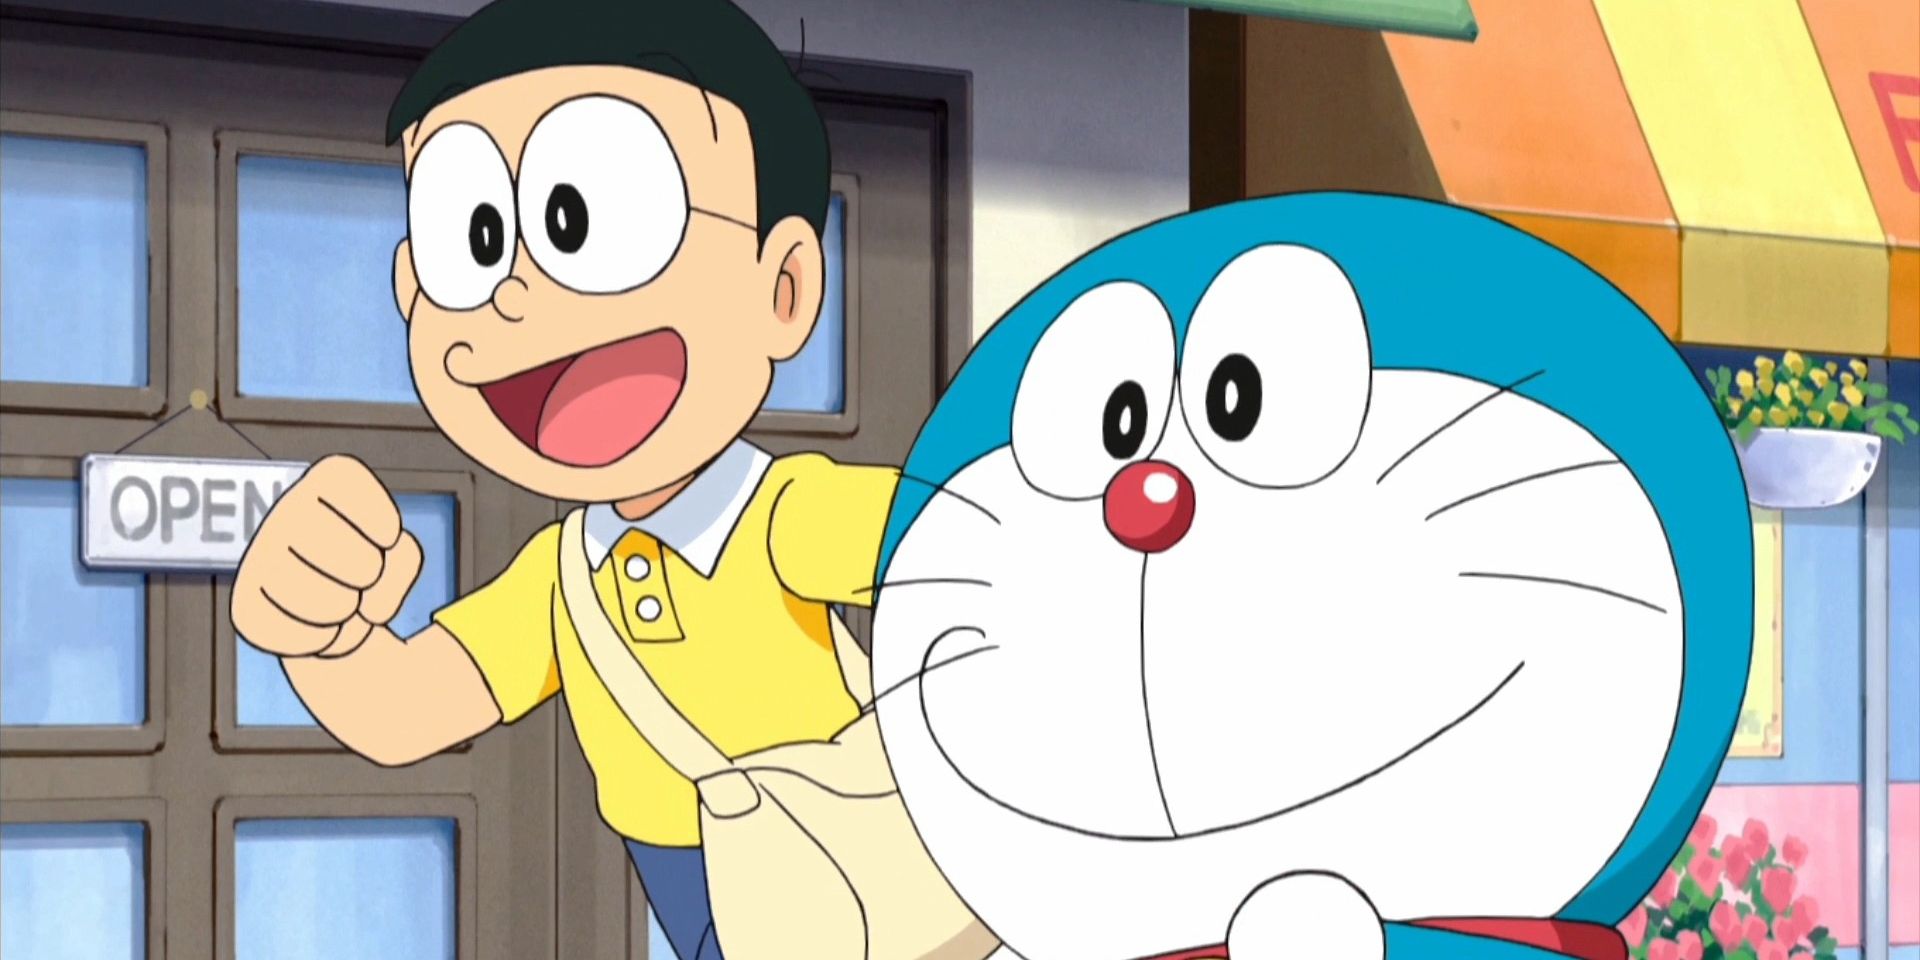 Anime cells: 1) Astro Boy; 2) Doraemon by Unknown Artist - Art Fund